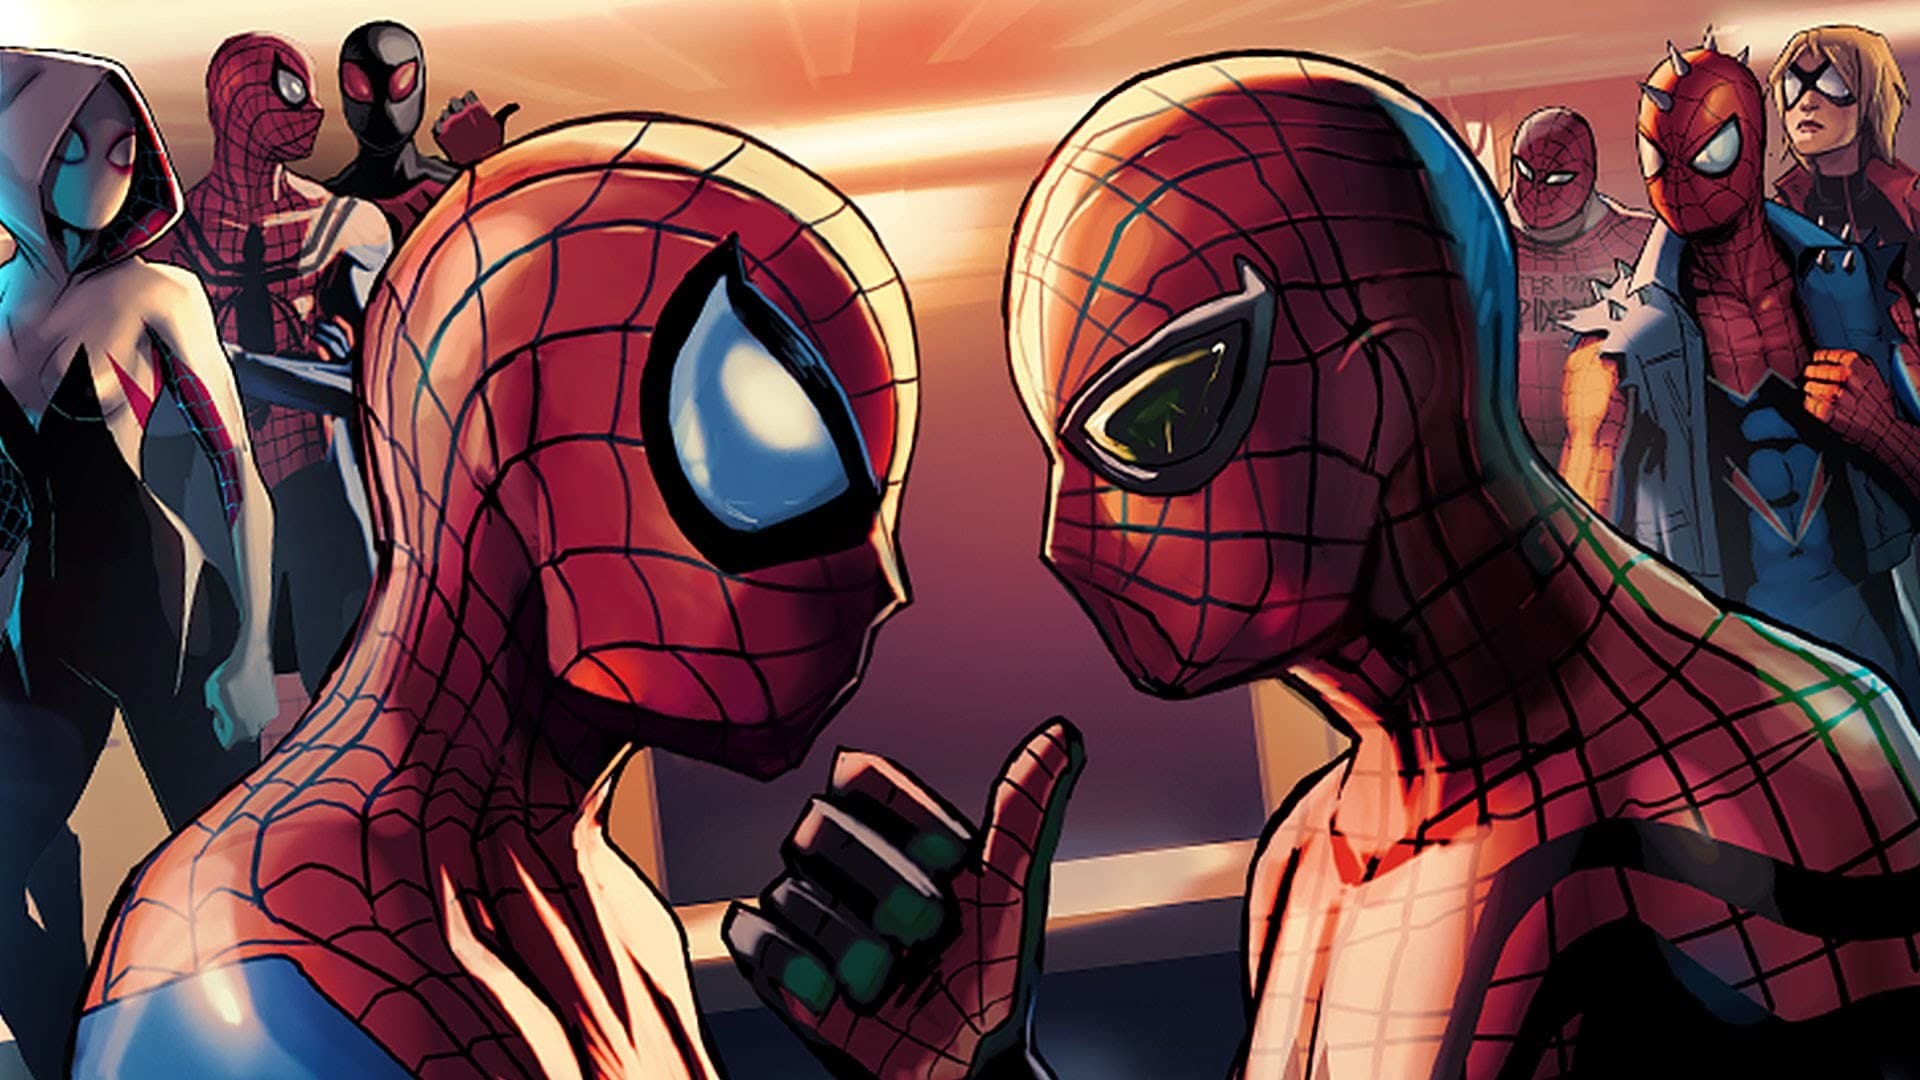 Superior Spider-Man' To Return In December - FandomWire